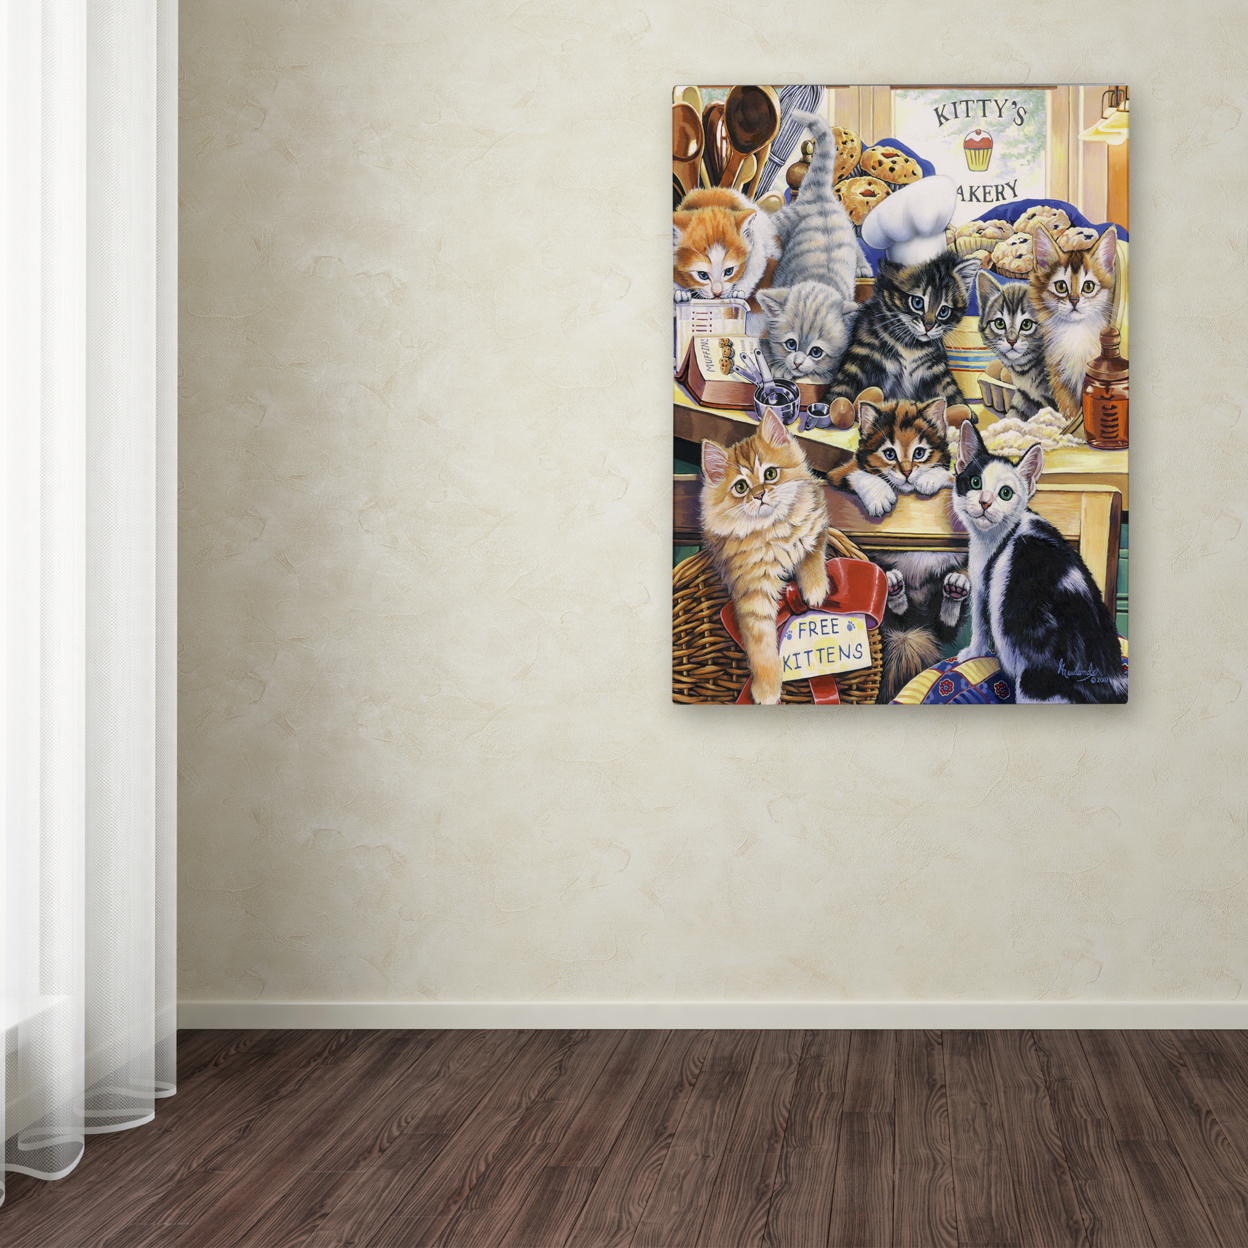 Jenny Newland 'Kitty Bakery' Canvas Wall Art 35 X 47 Inches